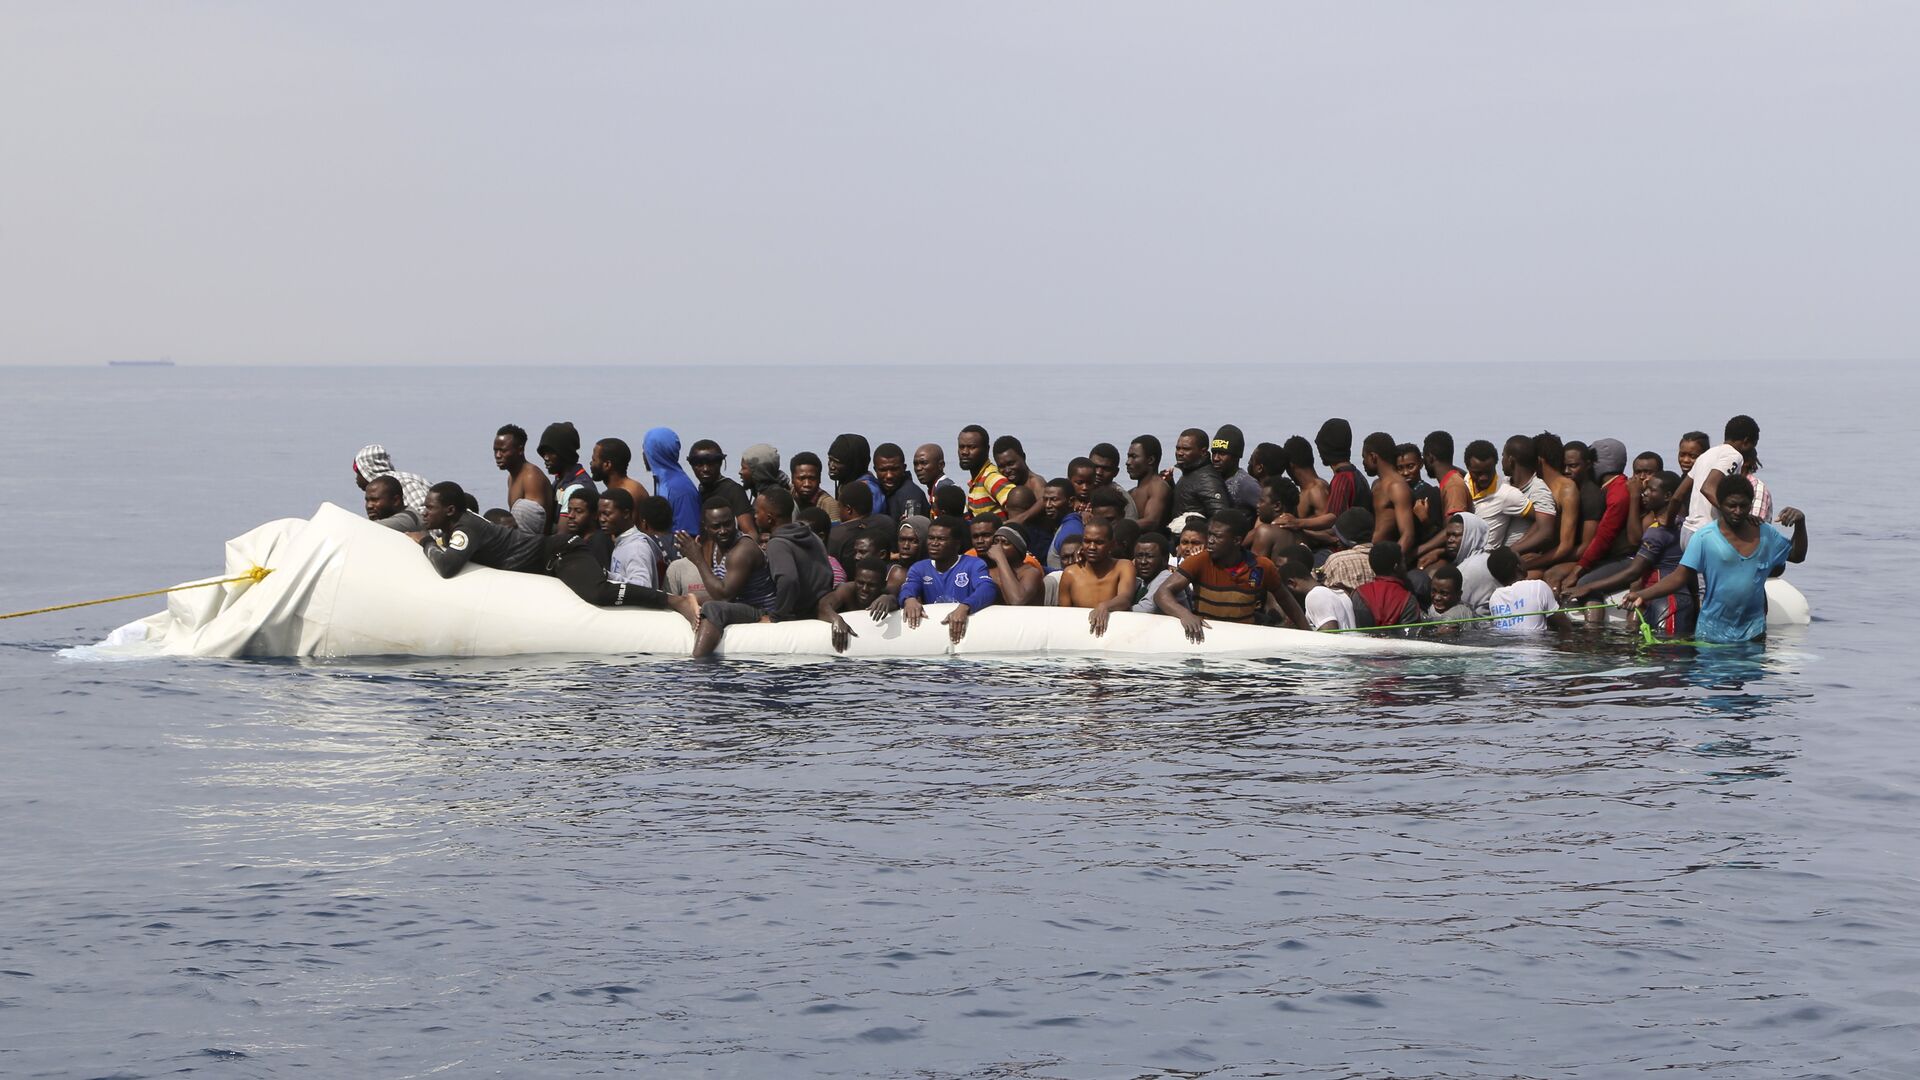 Мигранты ждут спасения после столкновения надувных лодок у ливийского прибрежного города Завия, они пытались пересечь Средиземное море в Европу - Sputnik Молдова, 1920, 05.08.2021